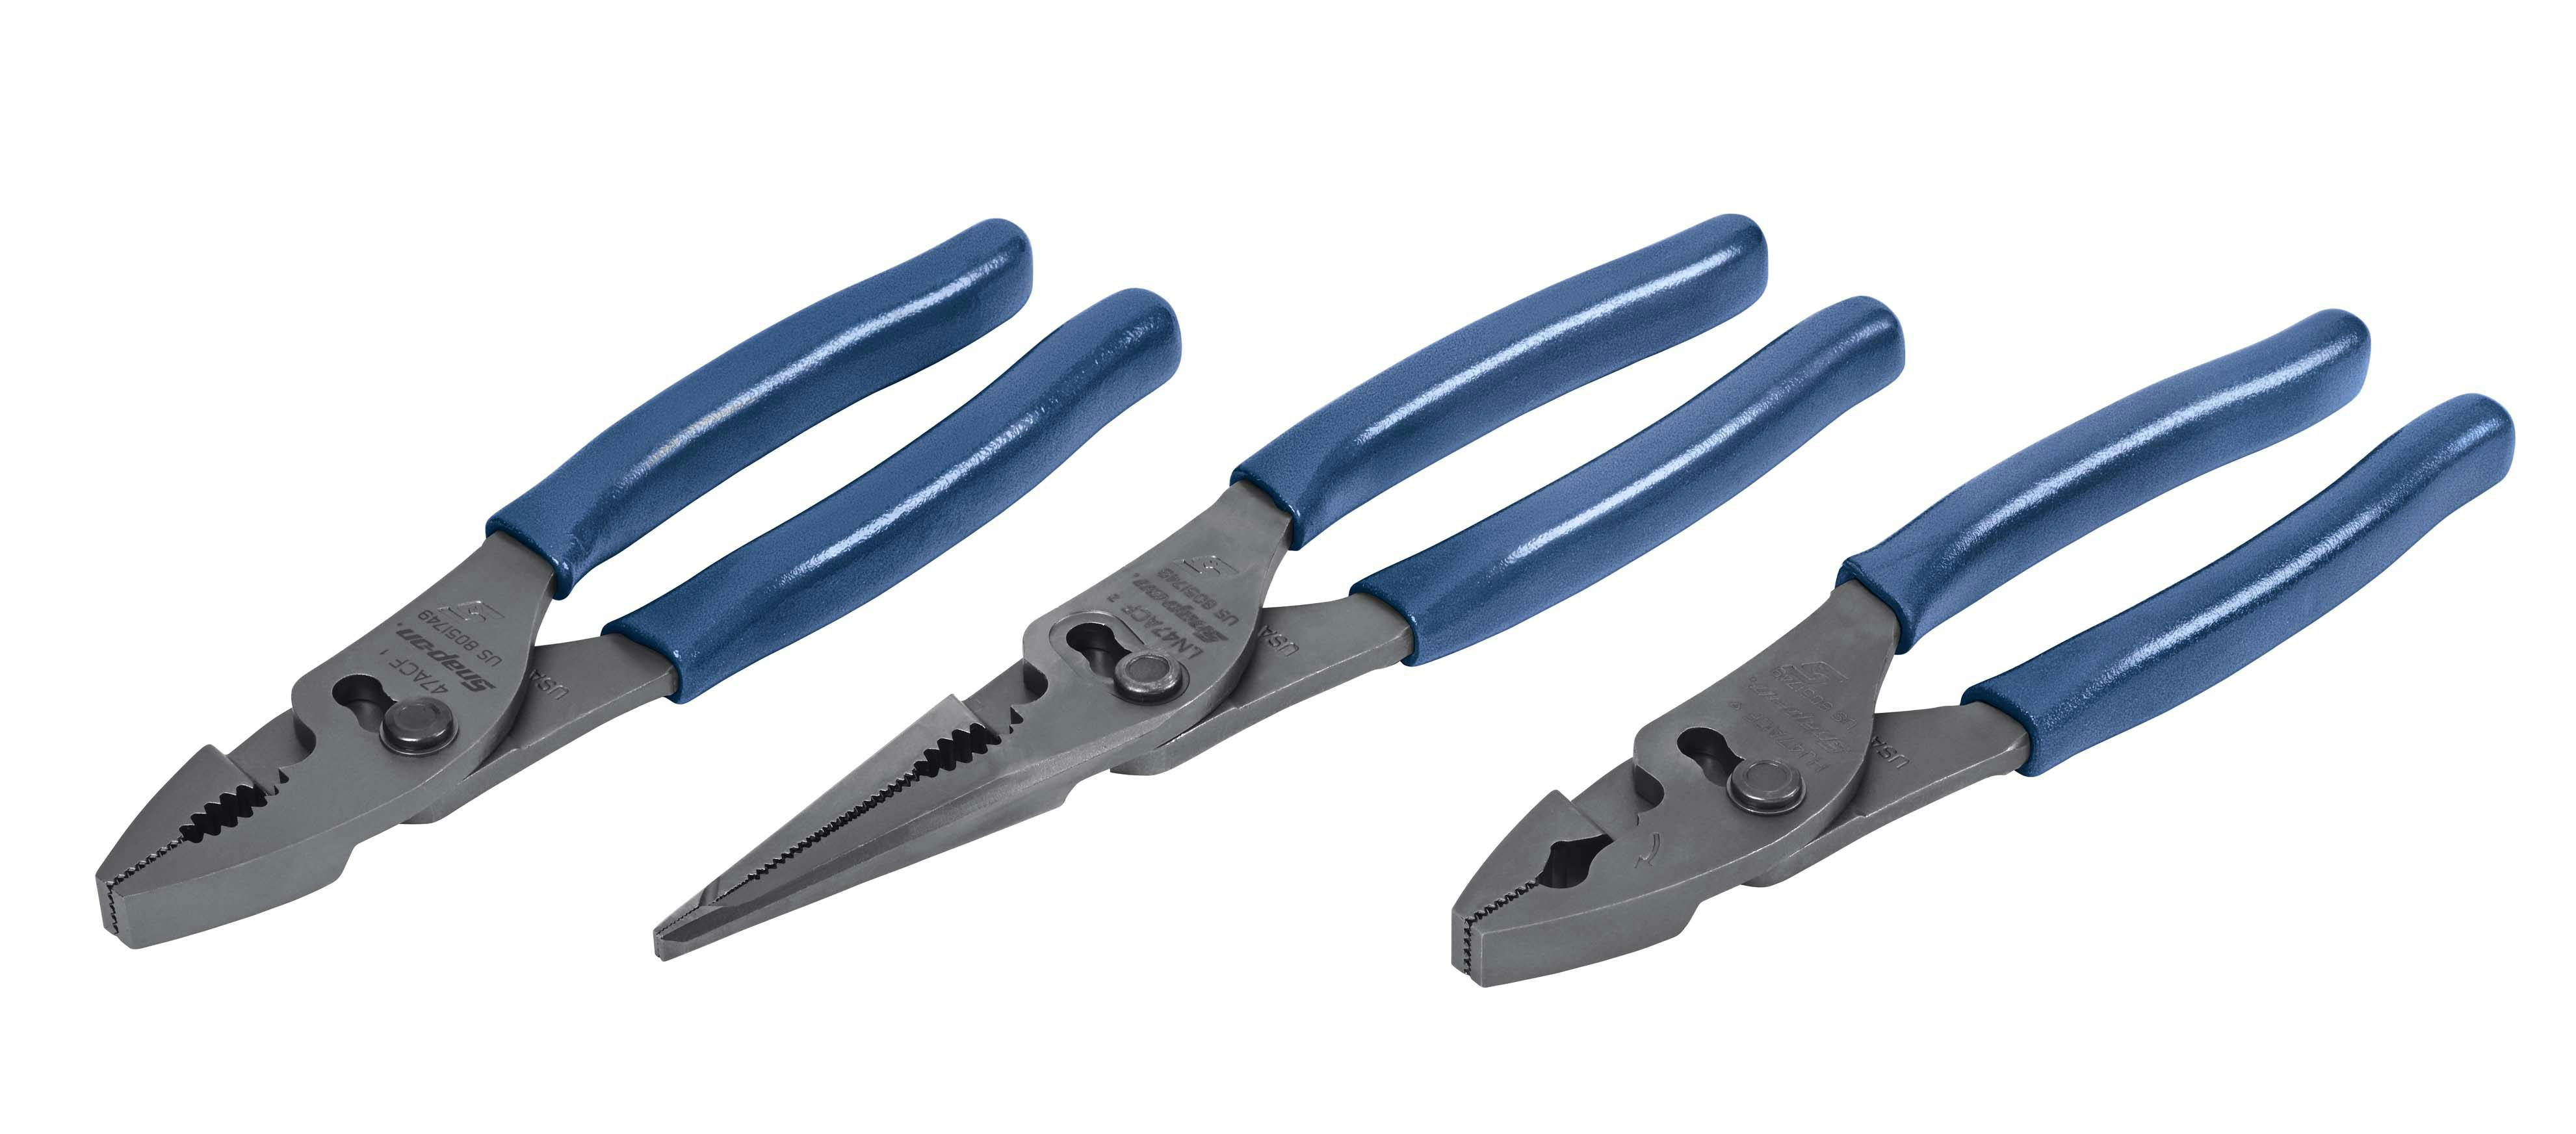 3 pc Talon Grip™ Slip-Joint Pliers Set (Power Blue 